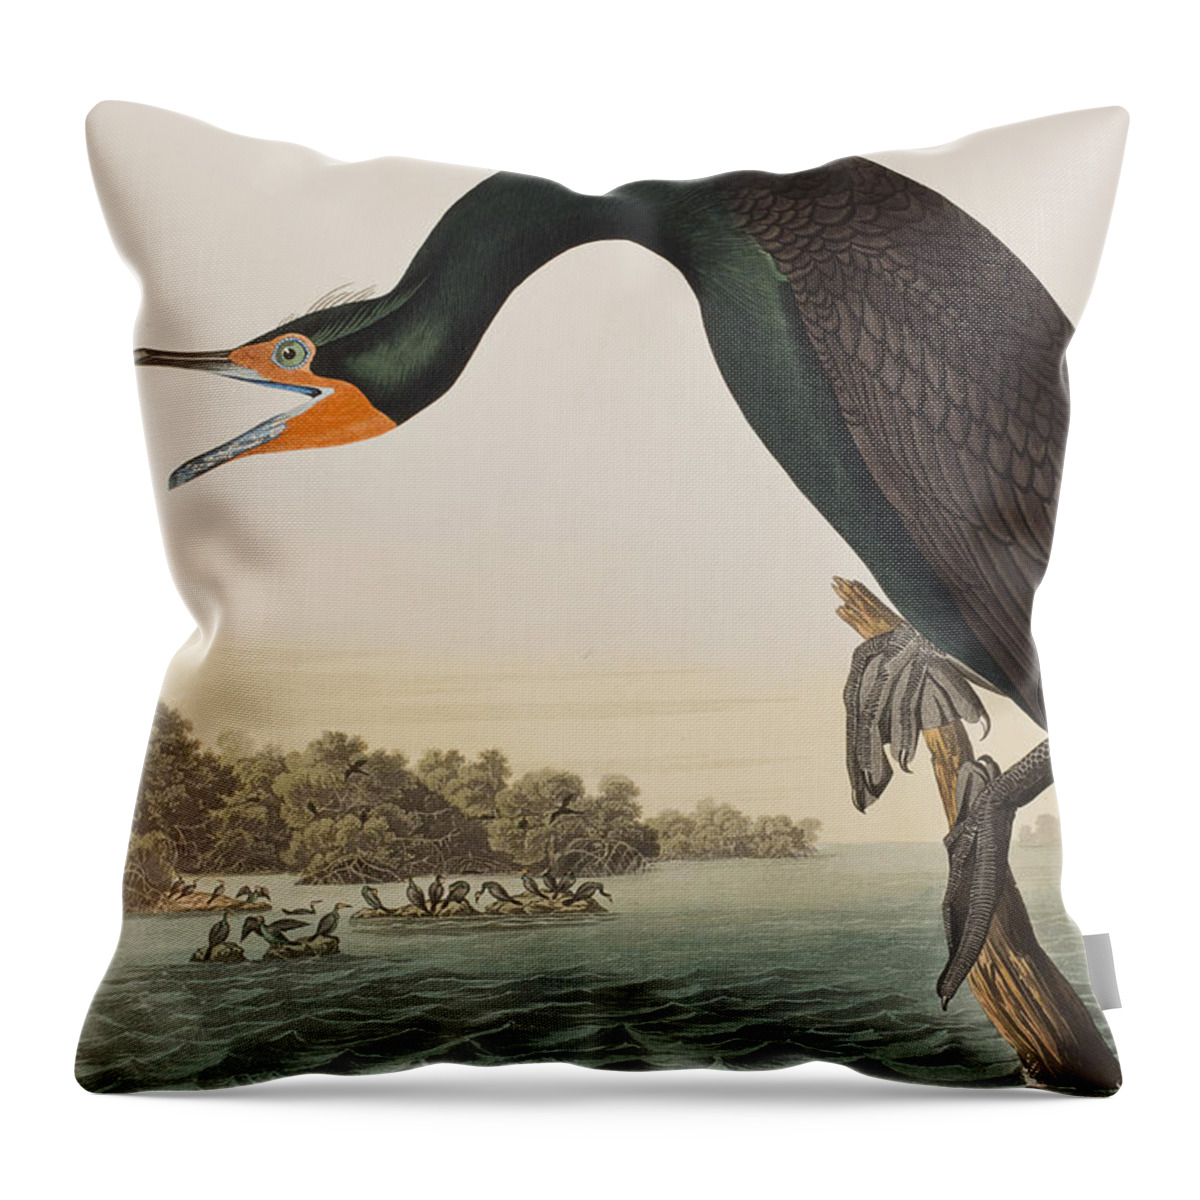 Florida Cormorant Throw Pillow featuring the painting Florida Cormorant by John James Audubon